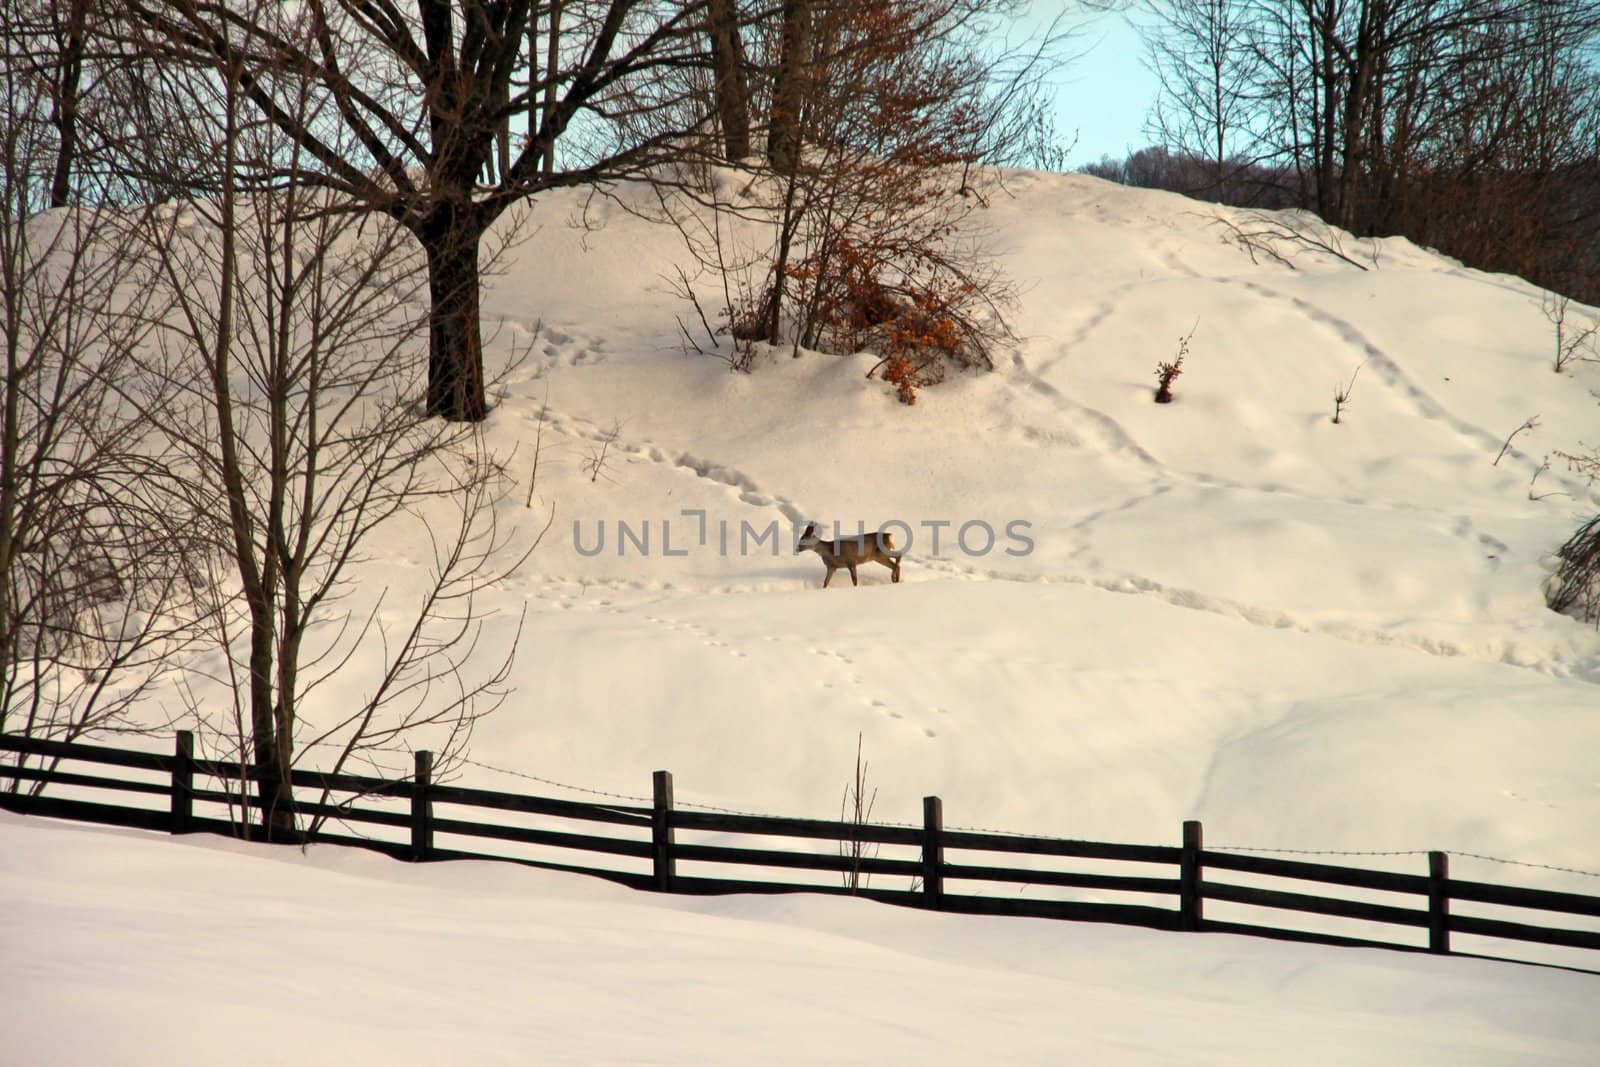 A deer in the snow by renegadewanderer